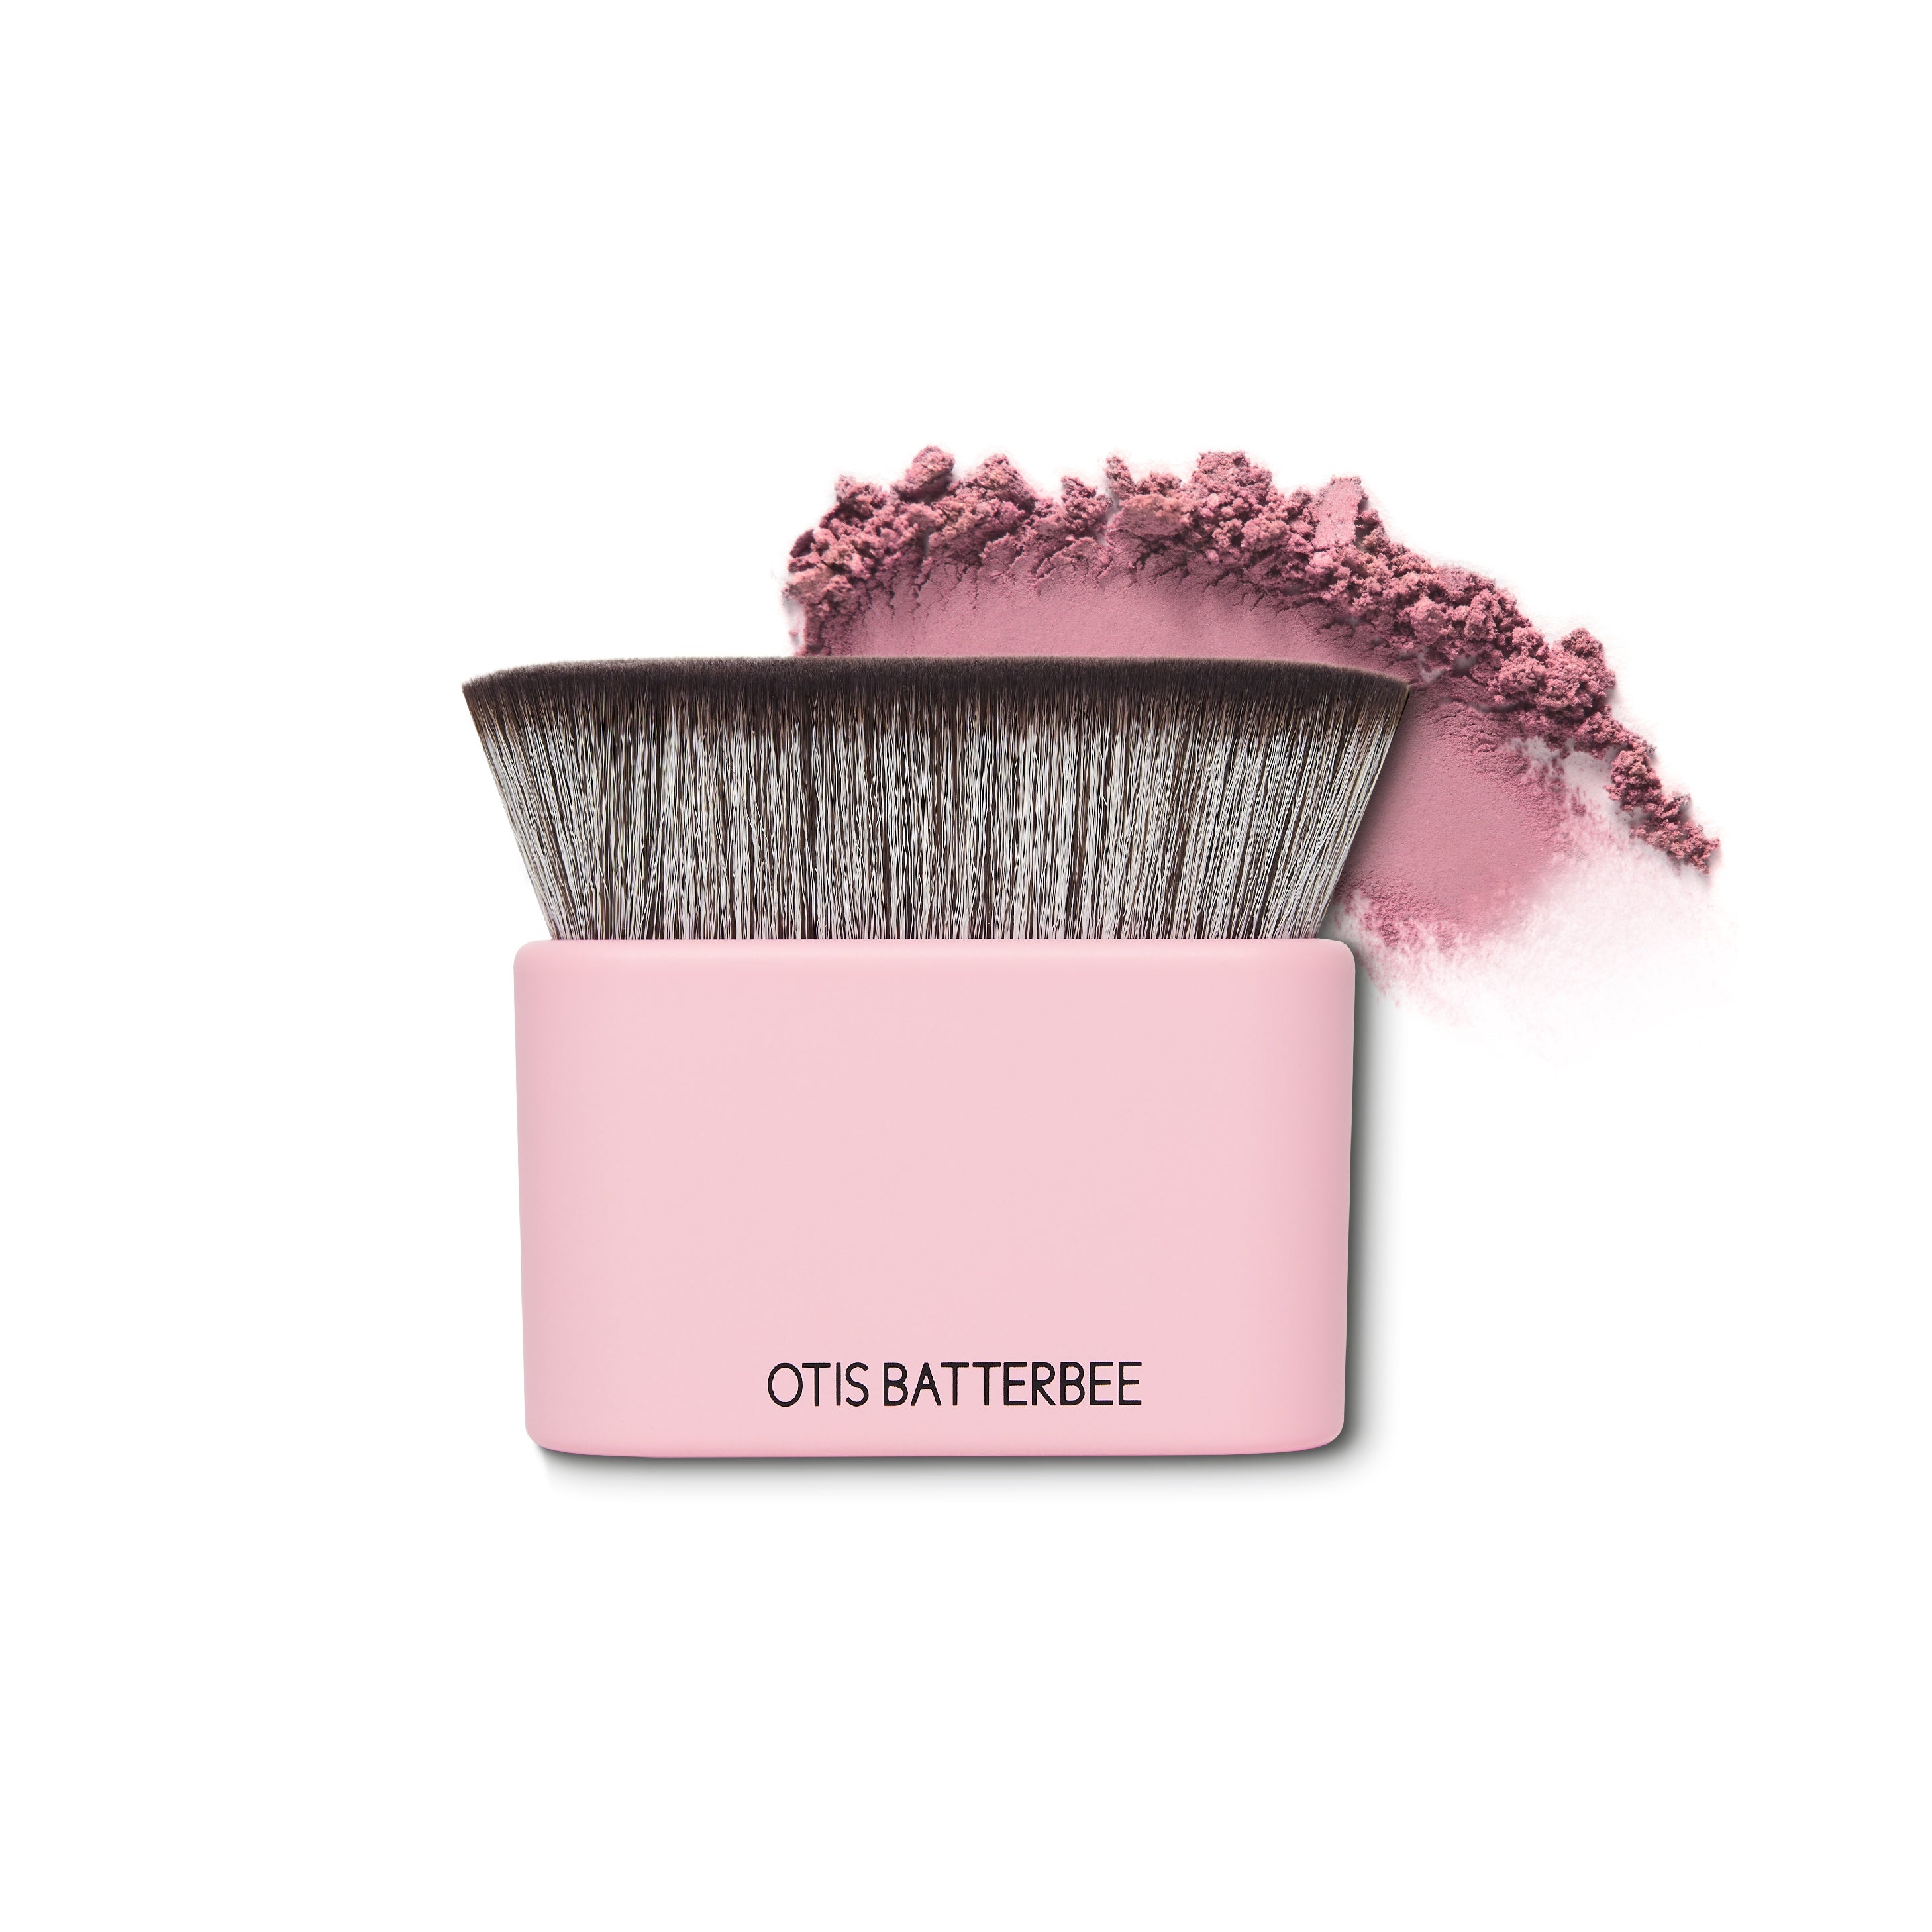 Otis Batterbee - Body and Face Makeup Brush Pink